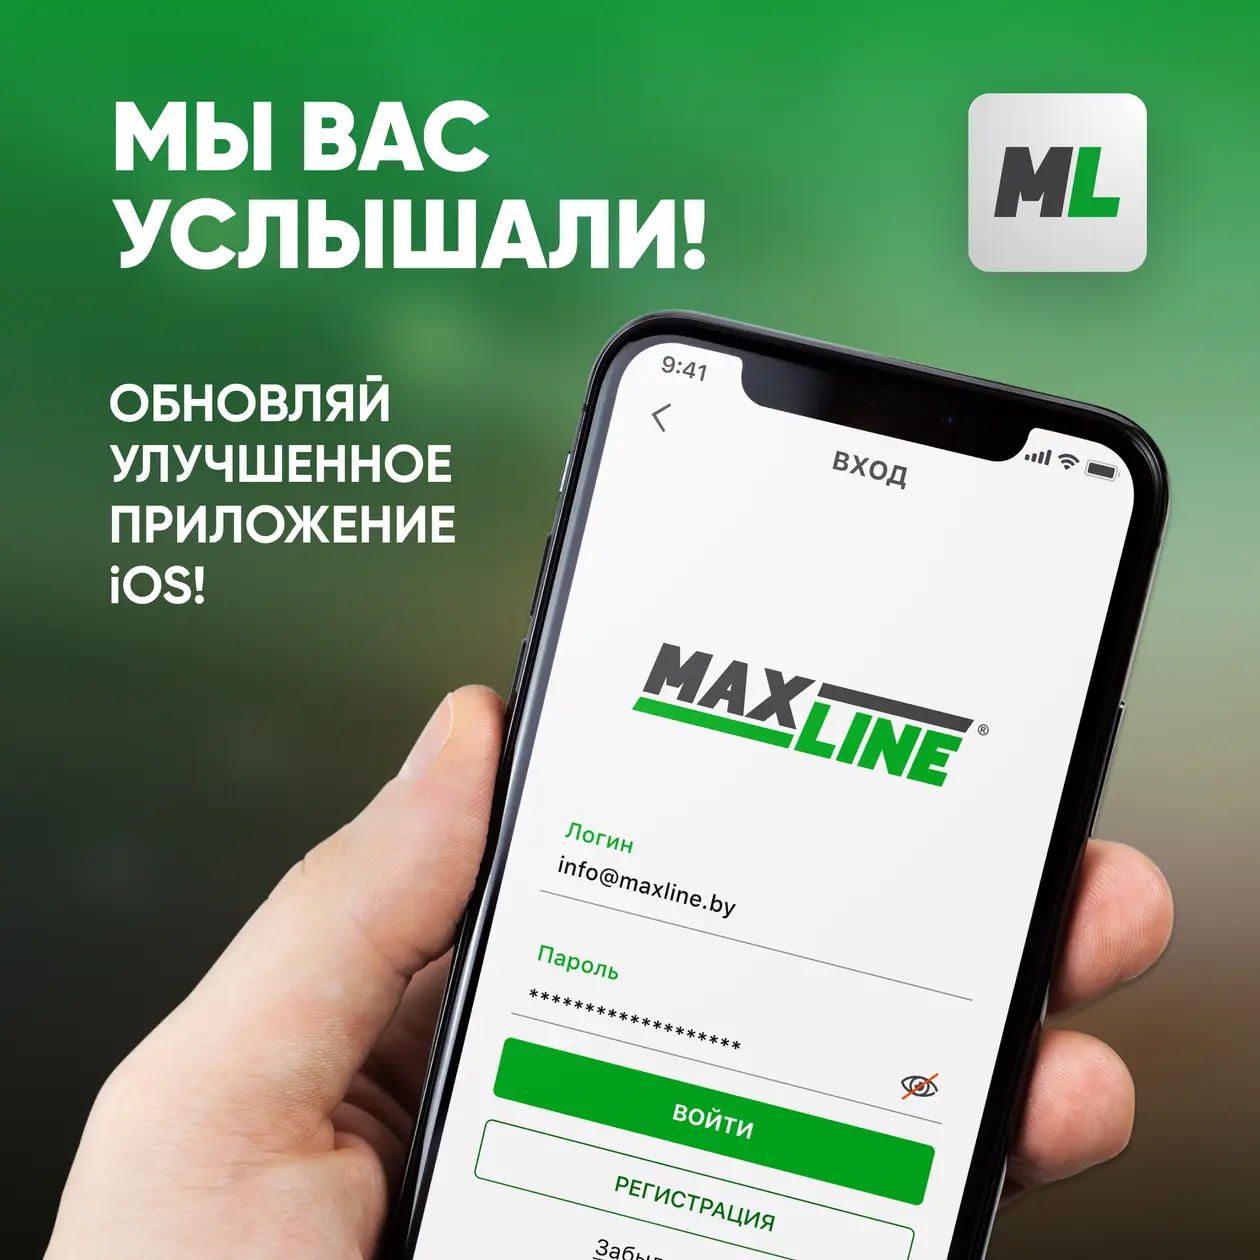 Улучшенная версия приложения для iOS от Maxline!